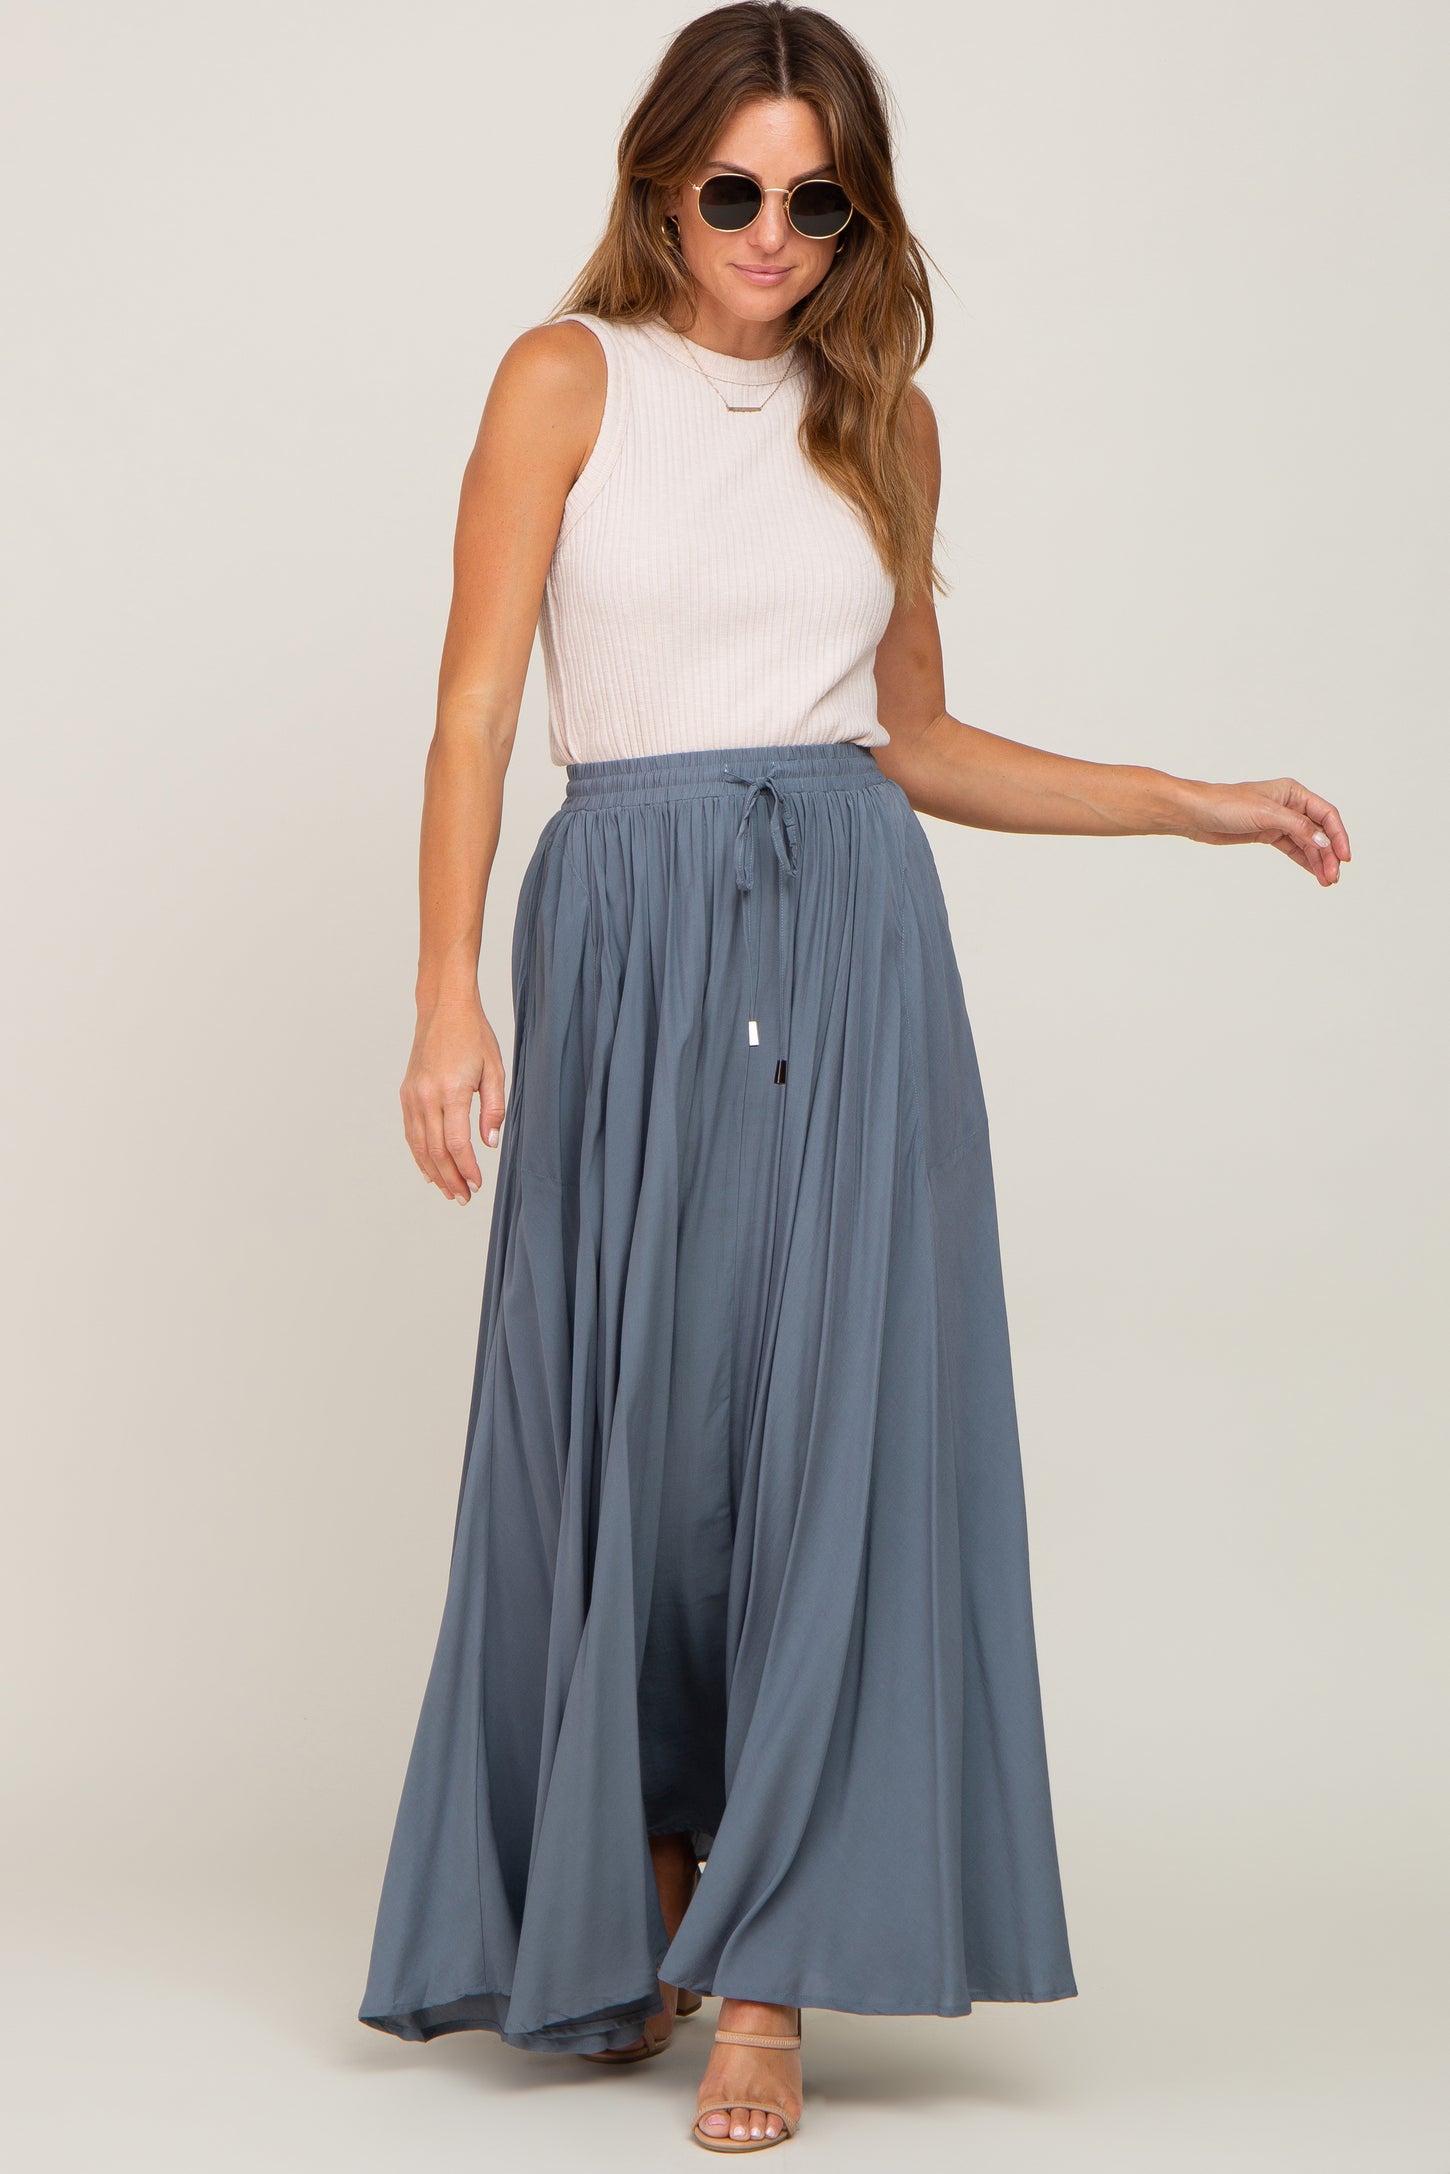 Blue Tassel Maxi Skirt– PinkBlush